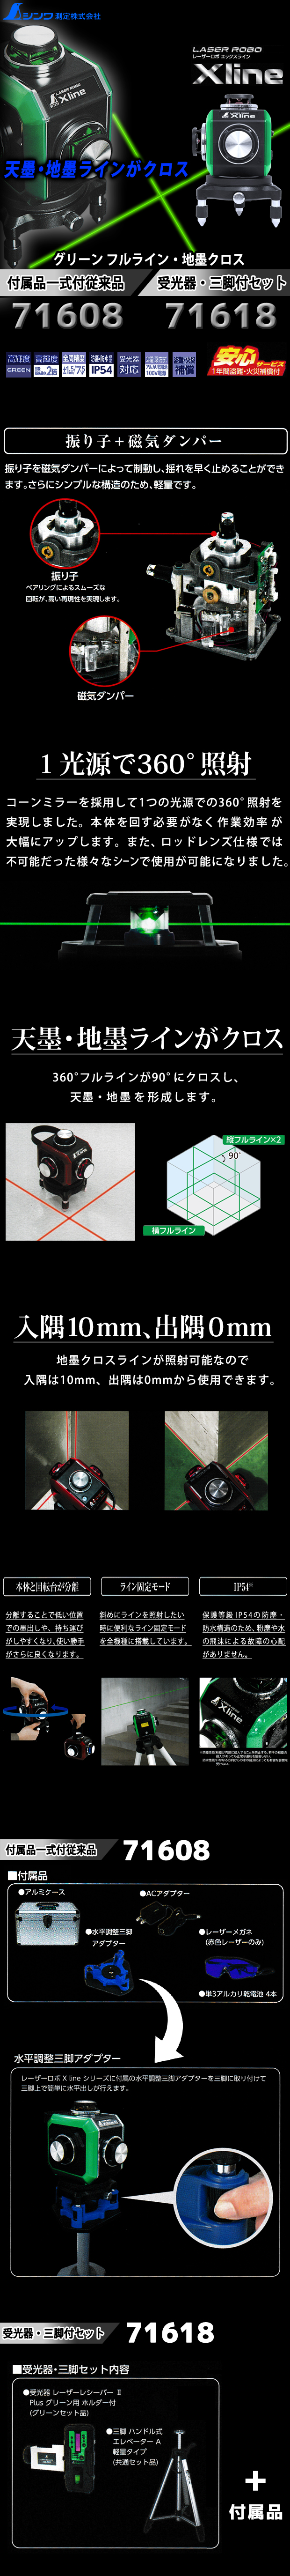 シンワ　振り子式墨出器 レーザーロボ X line グリーン